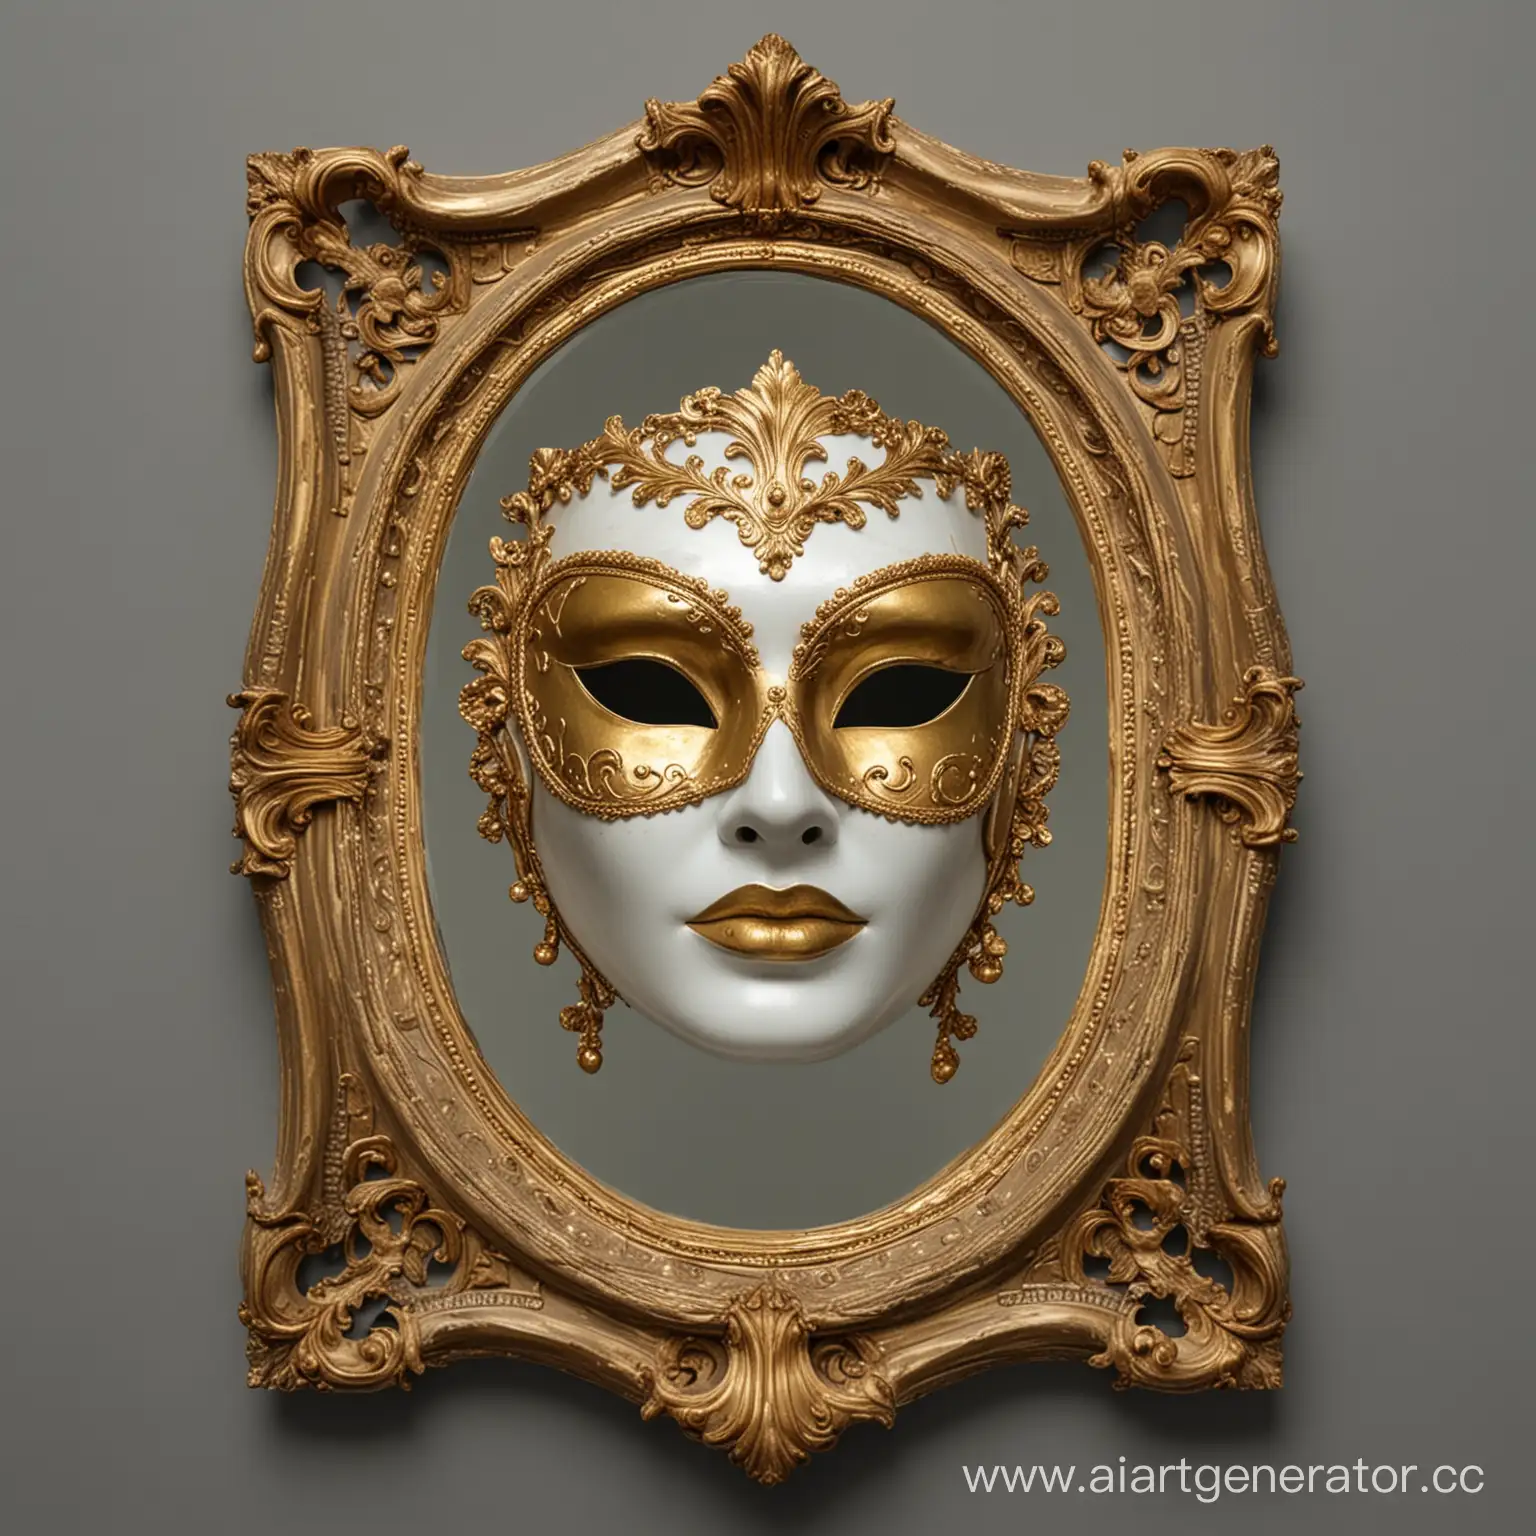 Венецианская женская маска с золотым обрамлением в зеркале, в зеркале не видно ничего кроме темноты и маски, зеркало овальное с золотым обрамлением, за зеркалом только серый фон